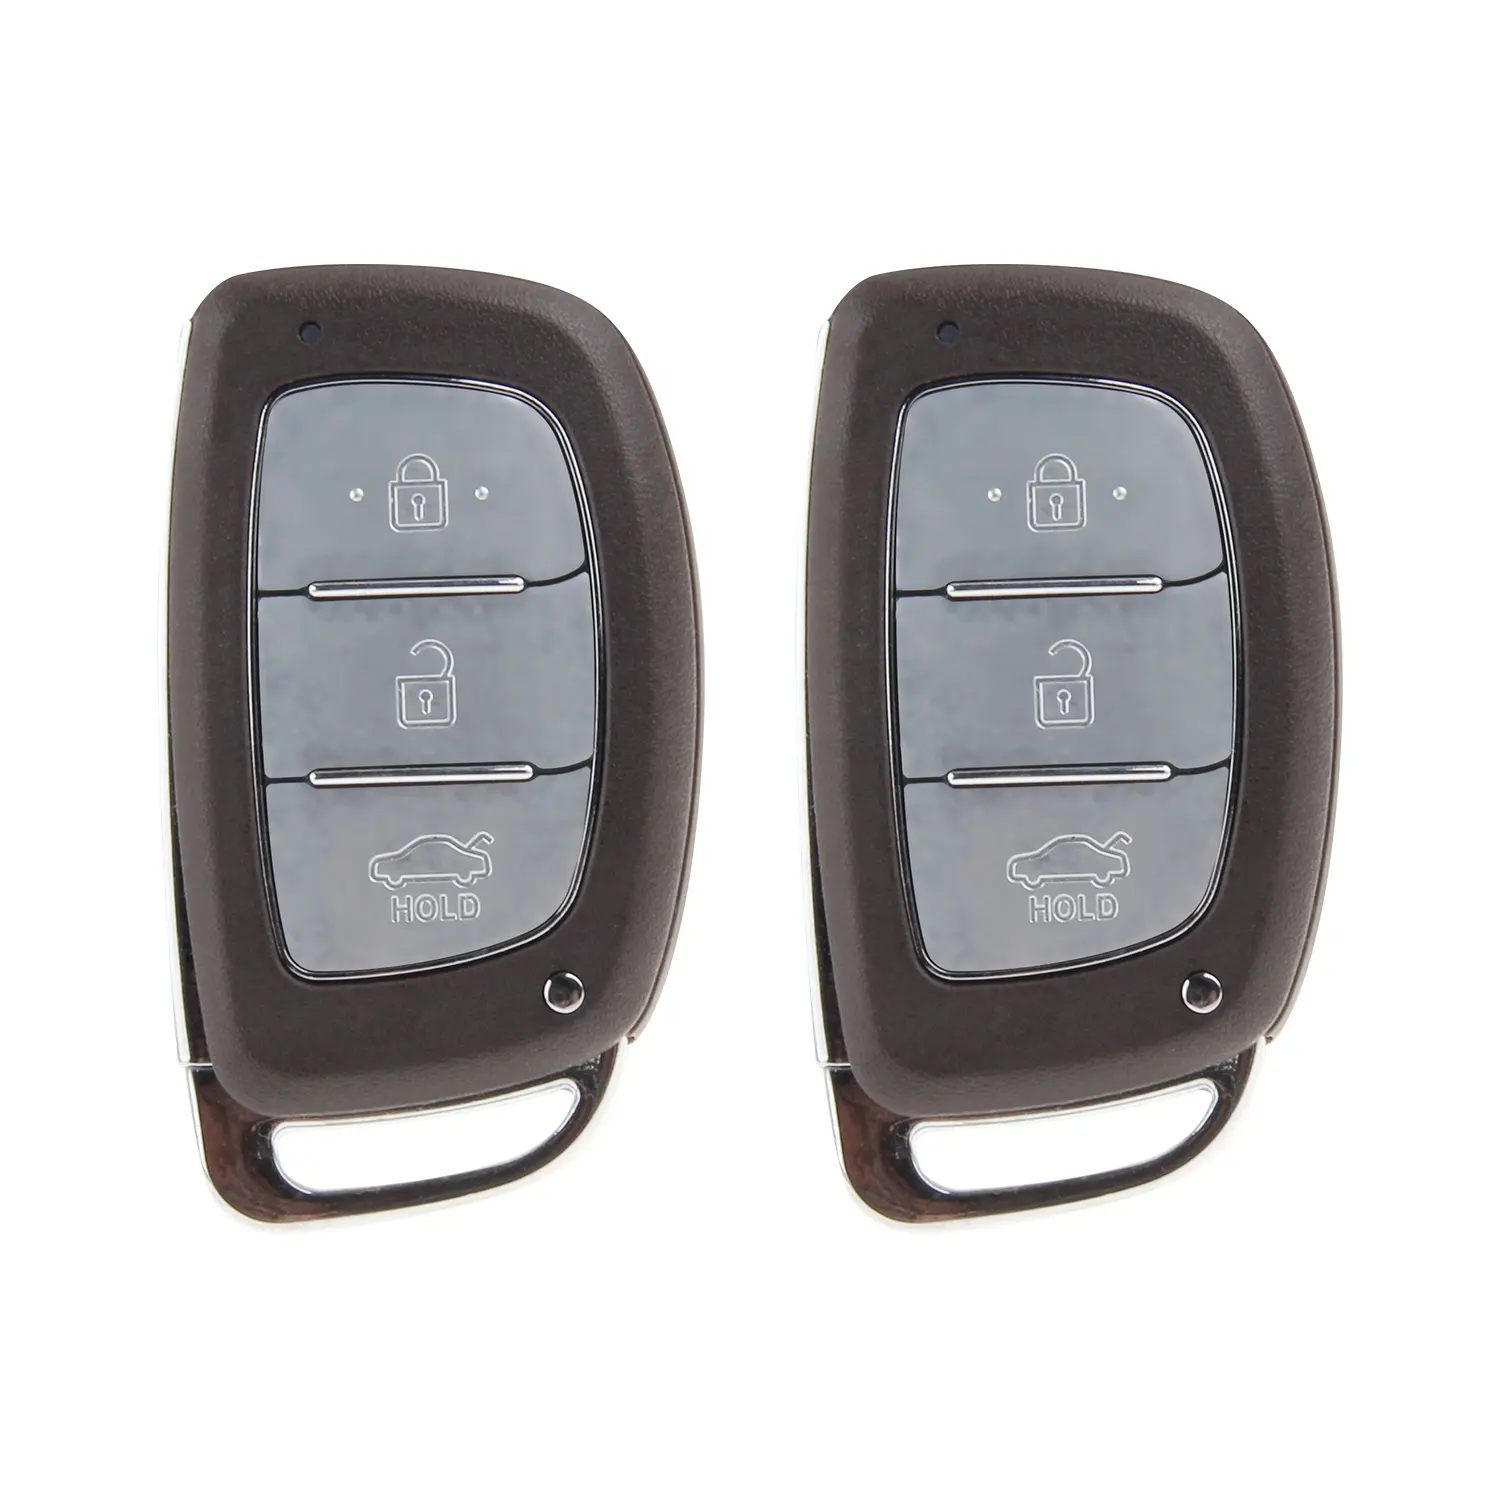 Easyguard EC002-HY2, remote masuk tanpa kunci pasif, memulai mesin mobil, alarm, penguncian NFC